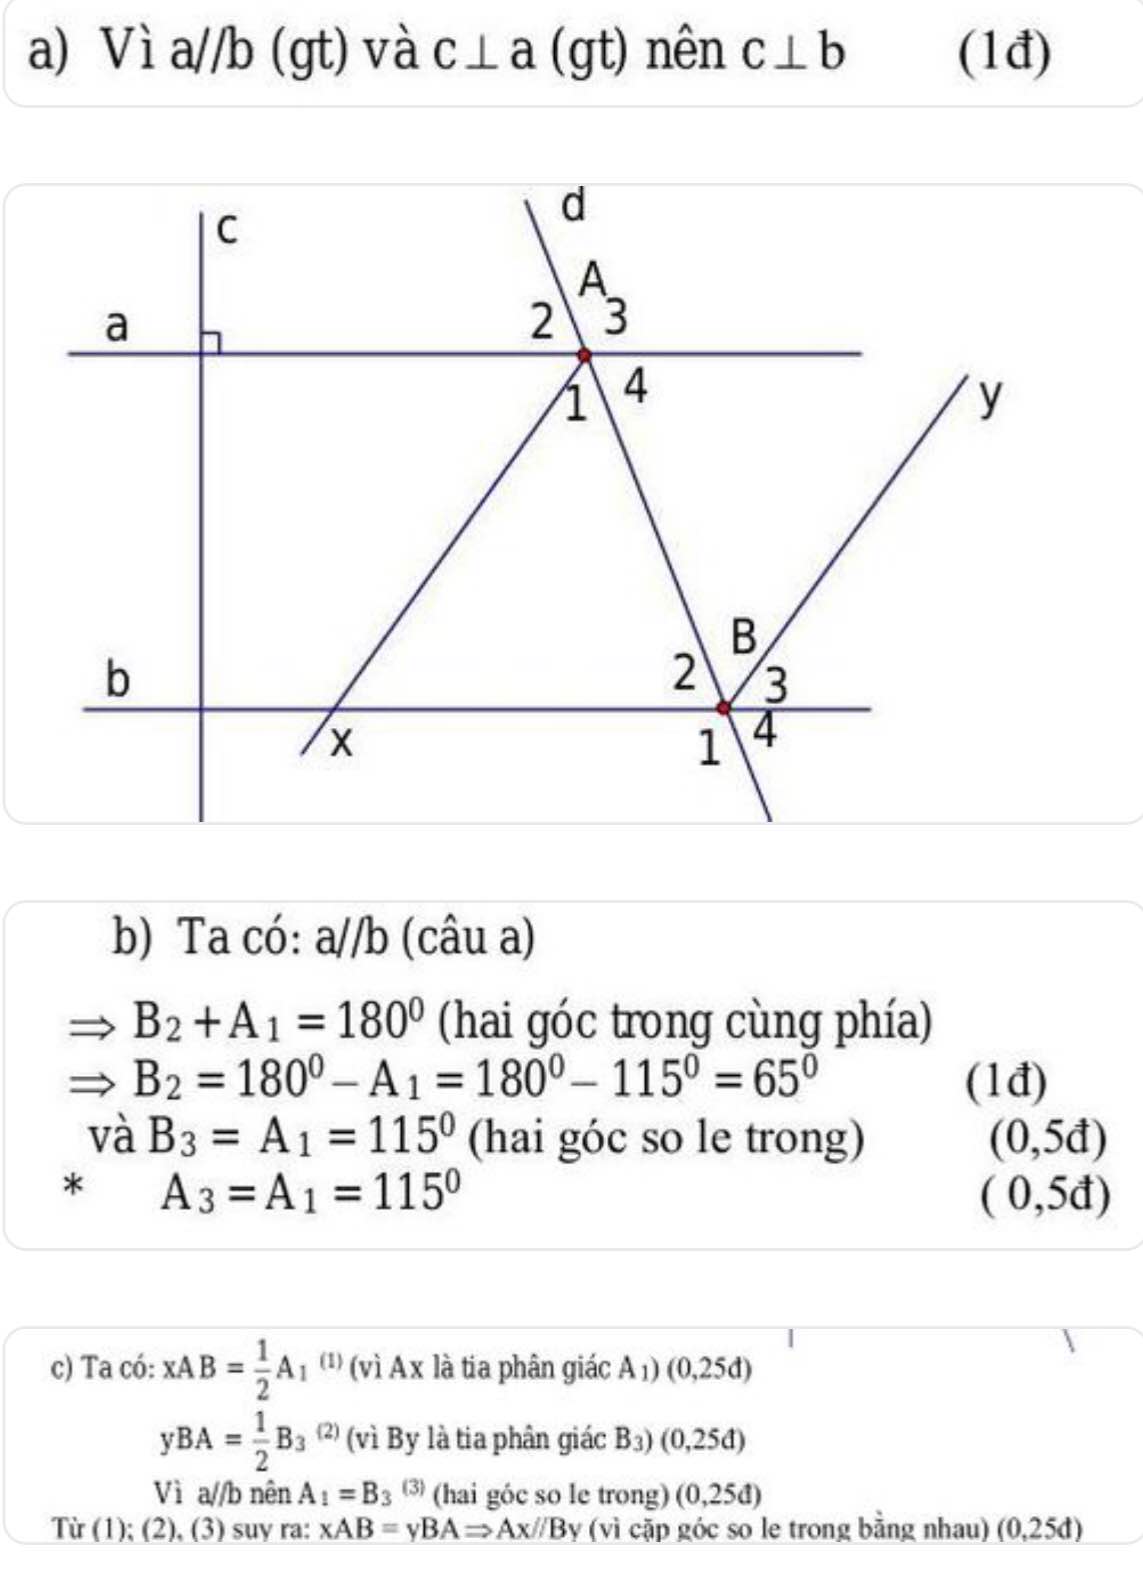 Xem hình vẽ và cho biết a vuông góc với c và c vuông góc với ba) Đường  thẳng a có song song với b không vì sao b) Cho bi... -